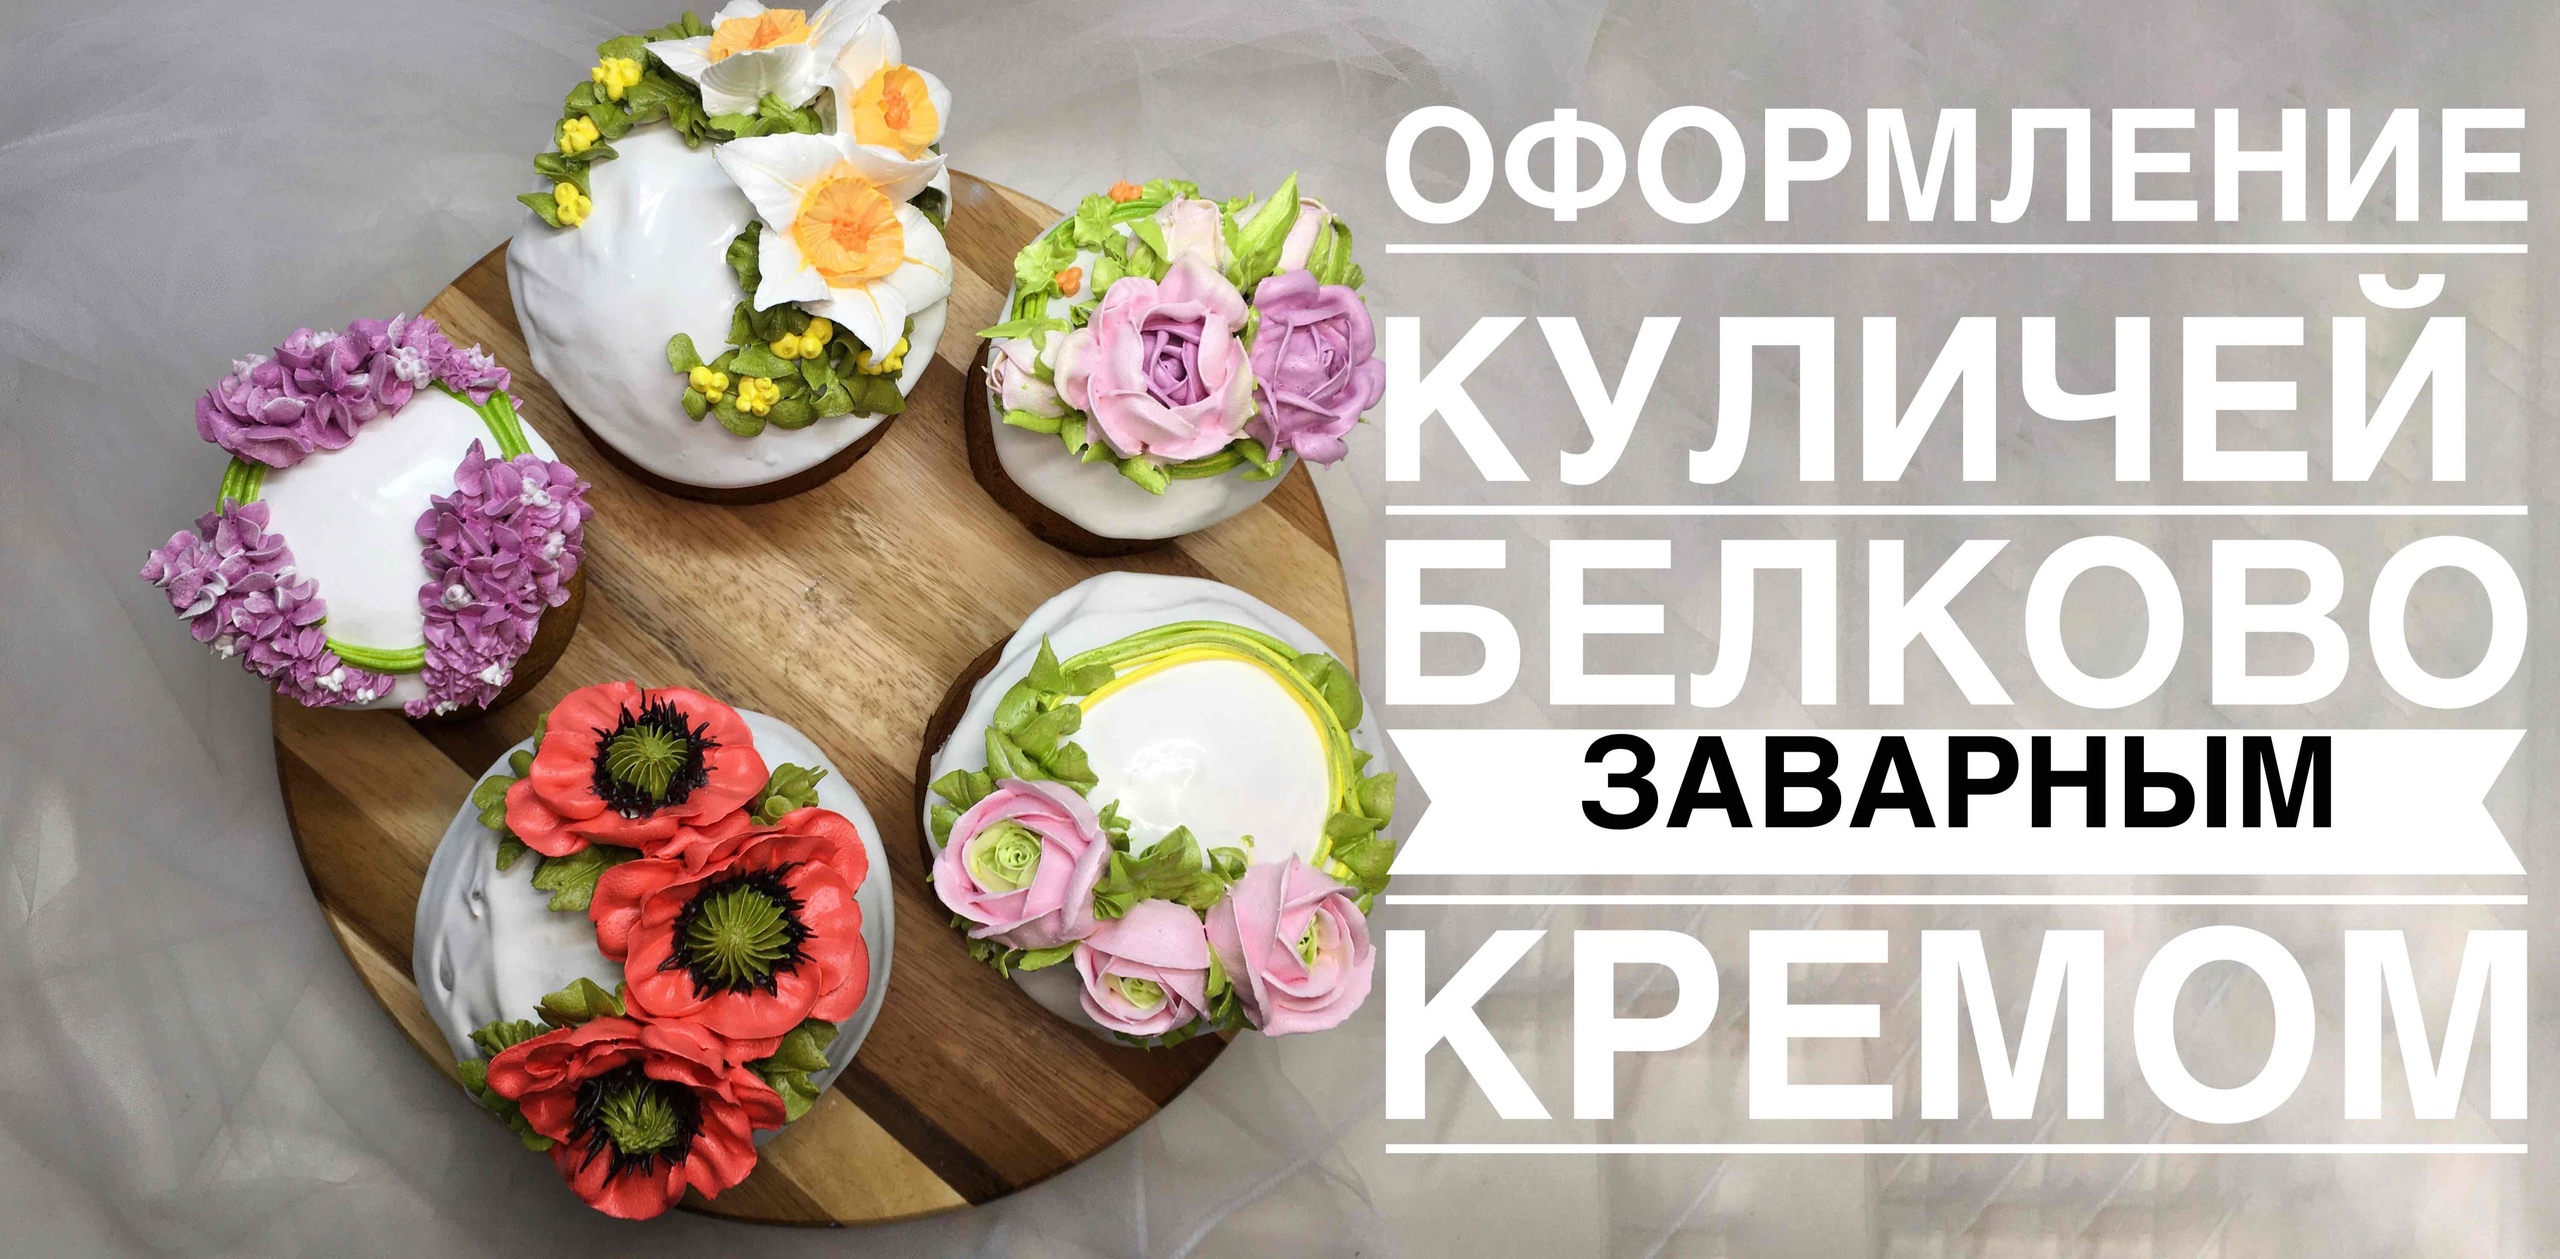 Оформление куличей цветами из крема_Cucumber decoration with cream flowers..mp4